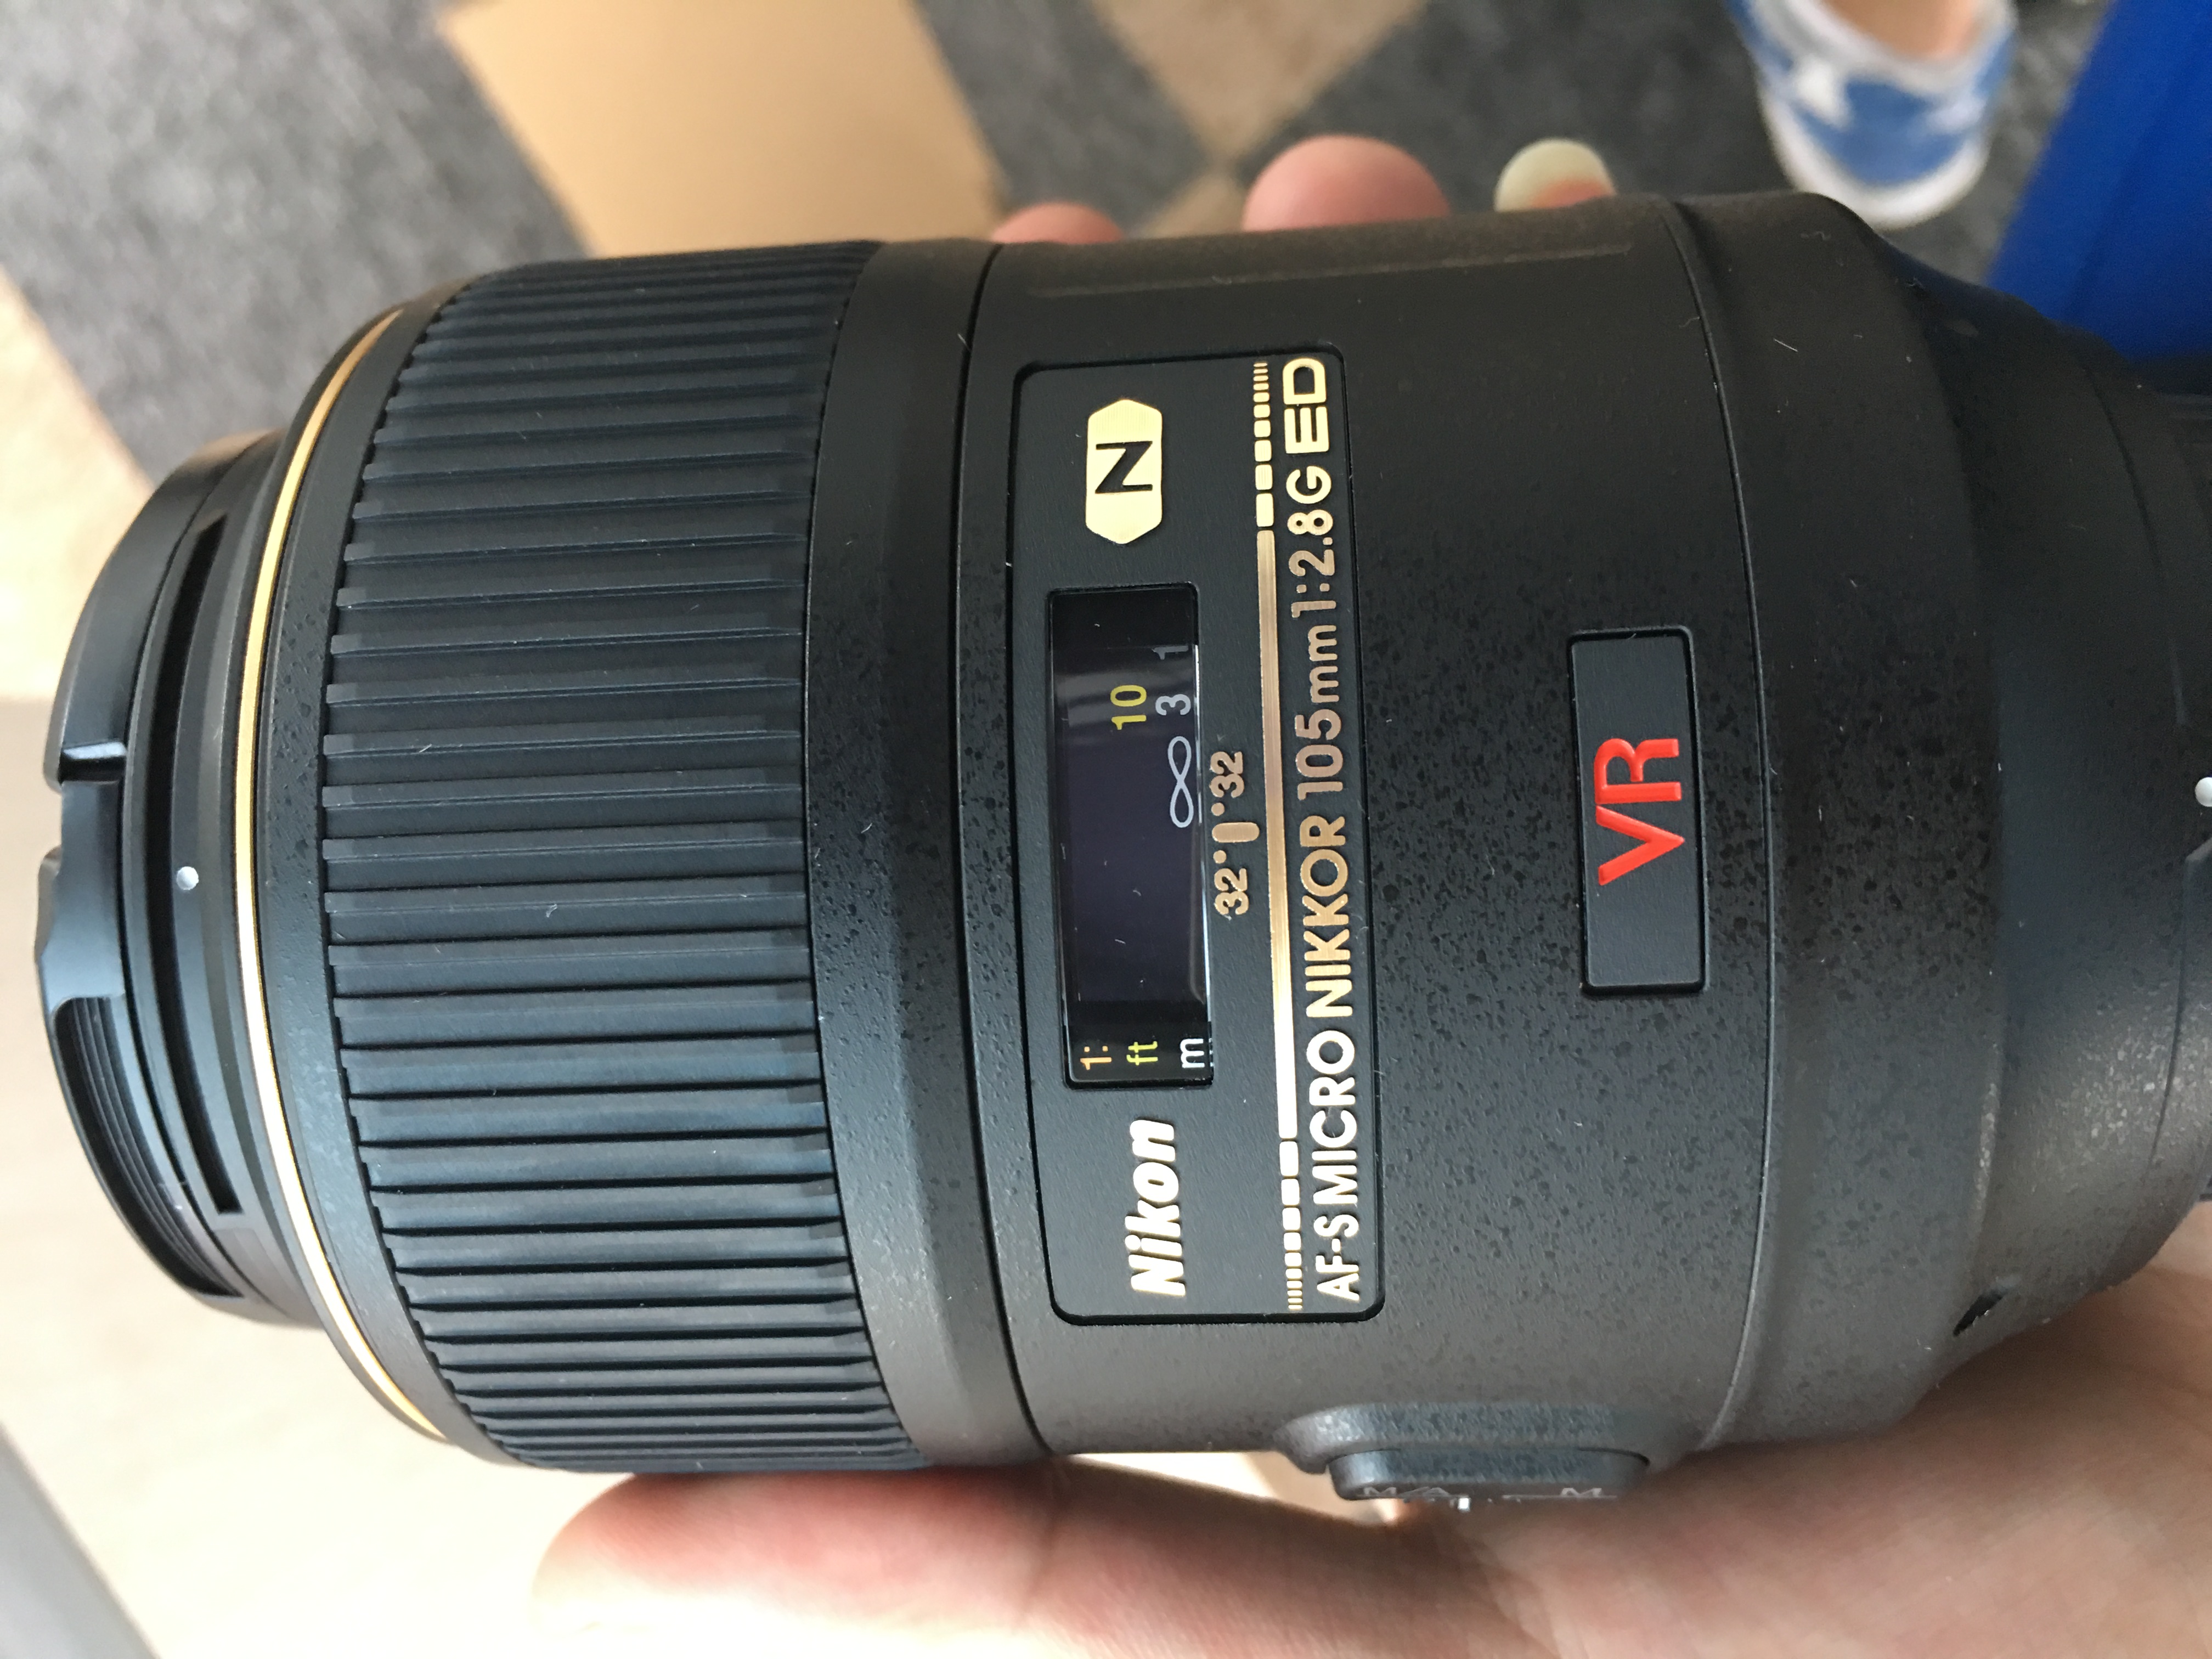 尼康 AF-S VR105mm f/2.8G IF-ED